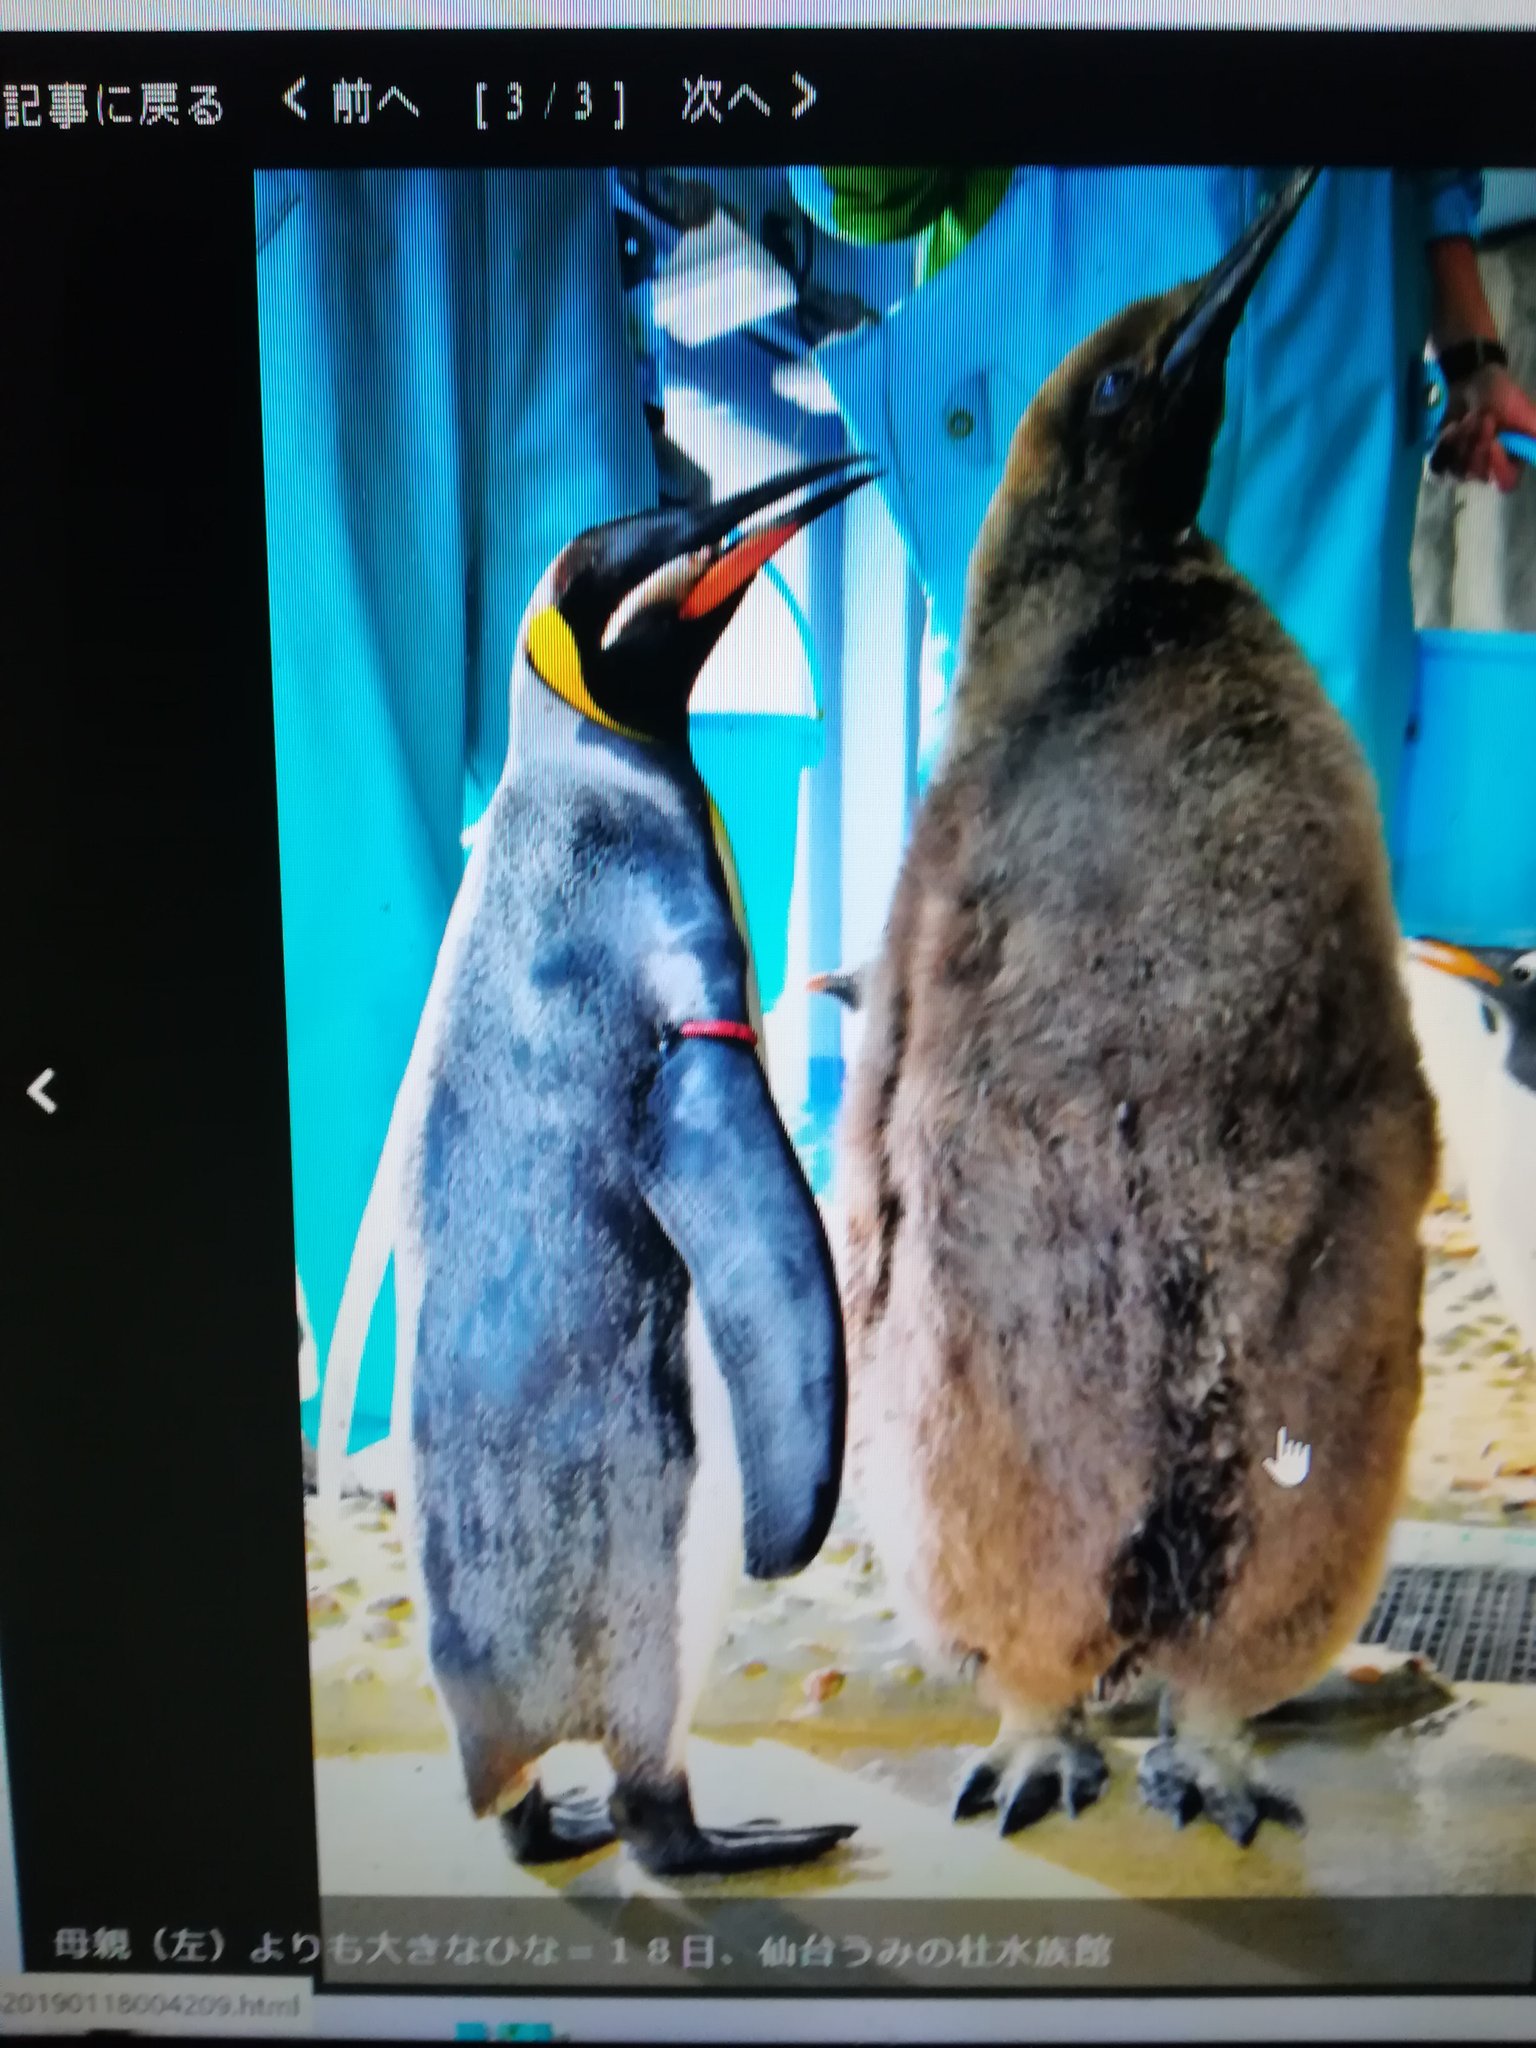 画像 大きすぎるペンギン のひなが人気 仙台うみの杜水族館にふわふわのぬいぐるみのような王様ペンギンのヒナ お母さんより大きいと話題に うみの杜水族館 オウサマペ まとめダネ